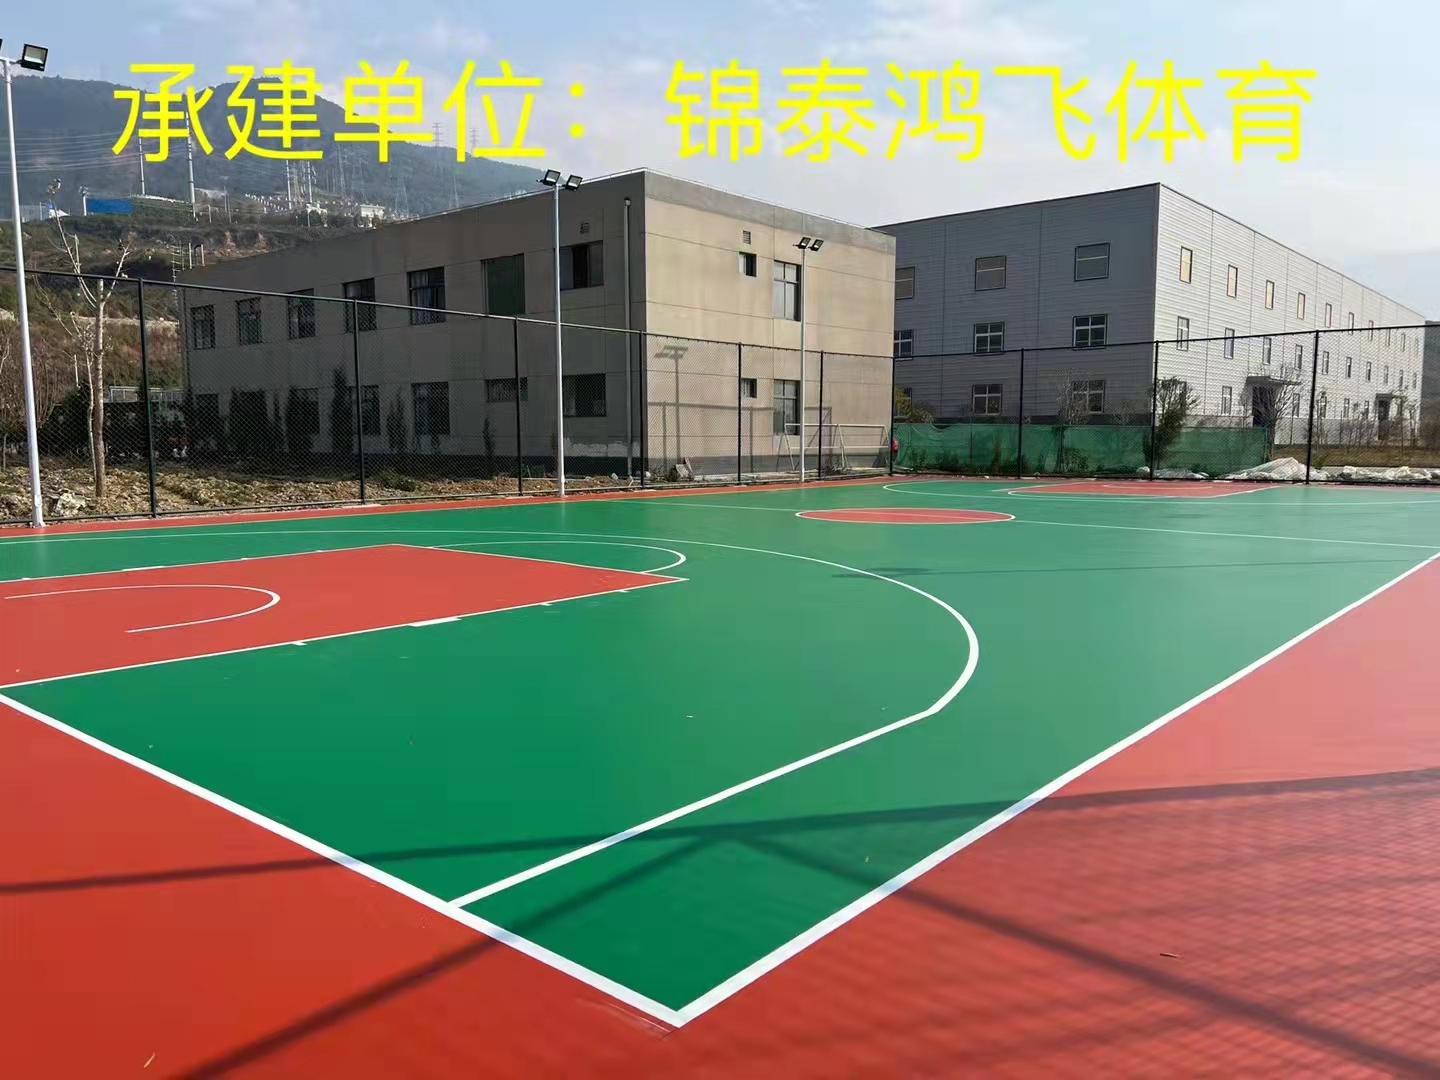 四川省凉山州冕宁县江铜稀土矿业产业园硅PU篮球场